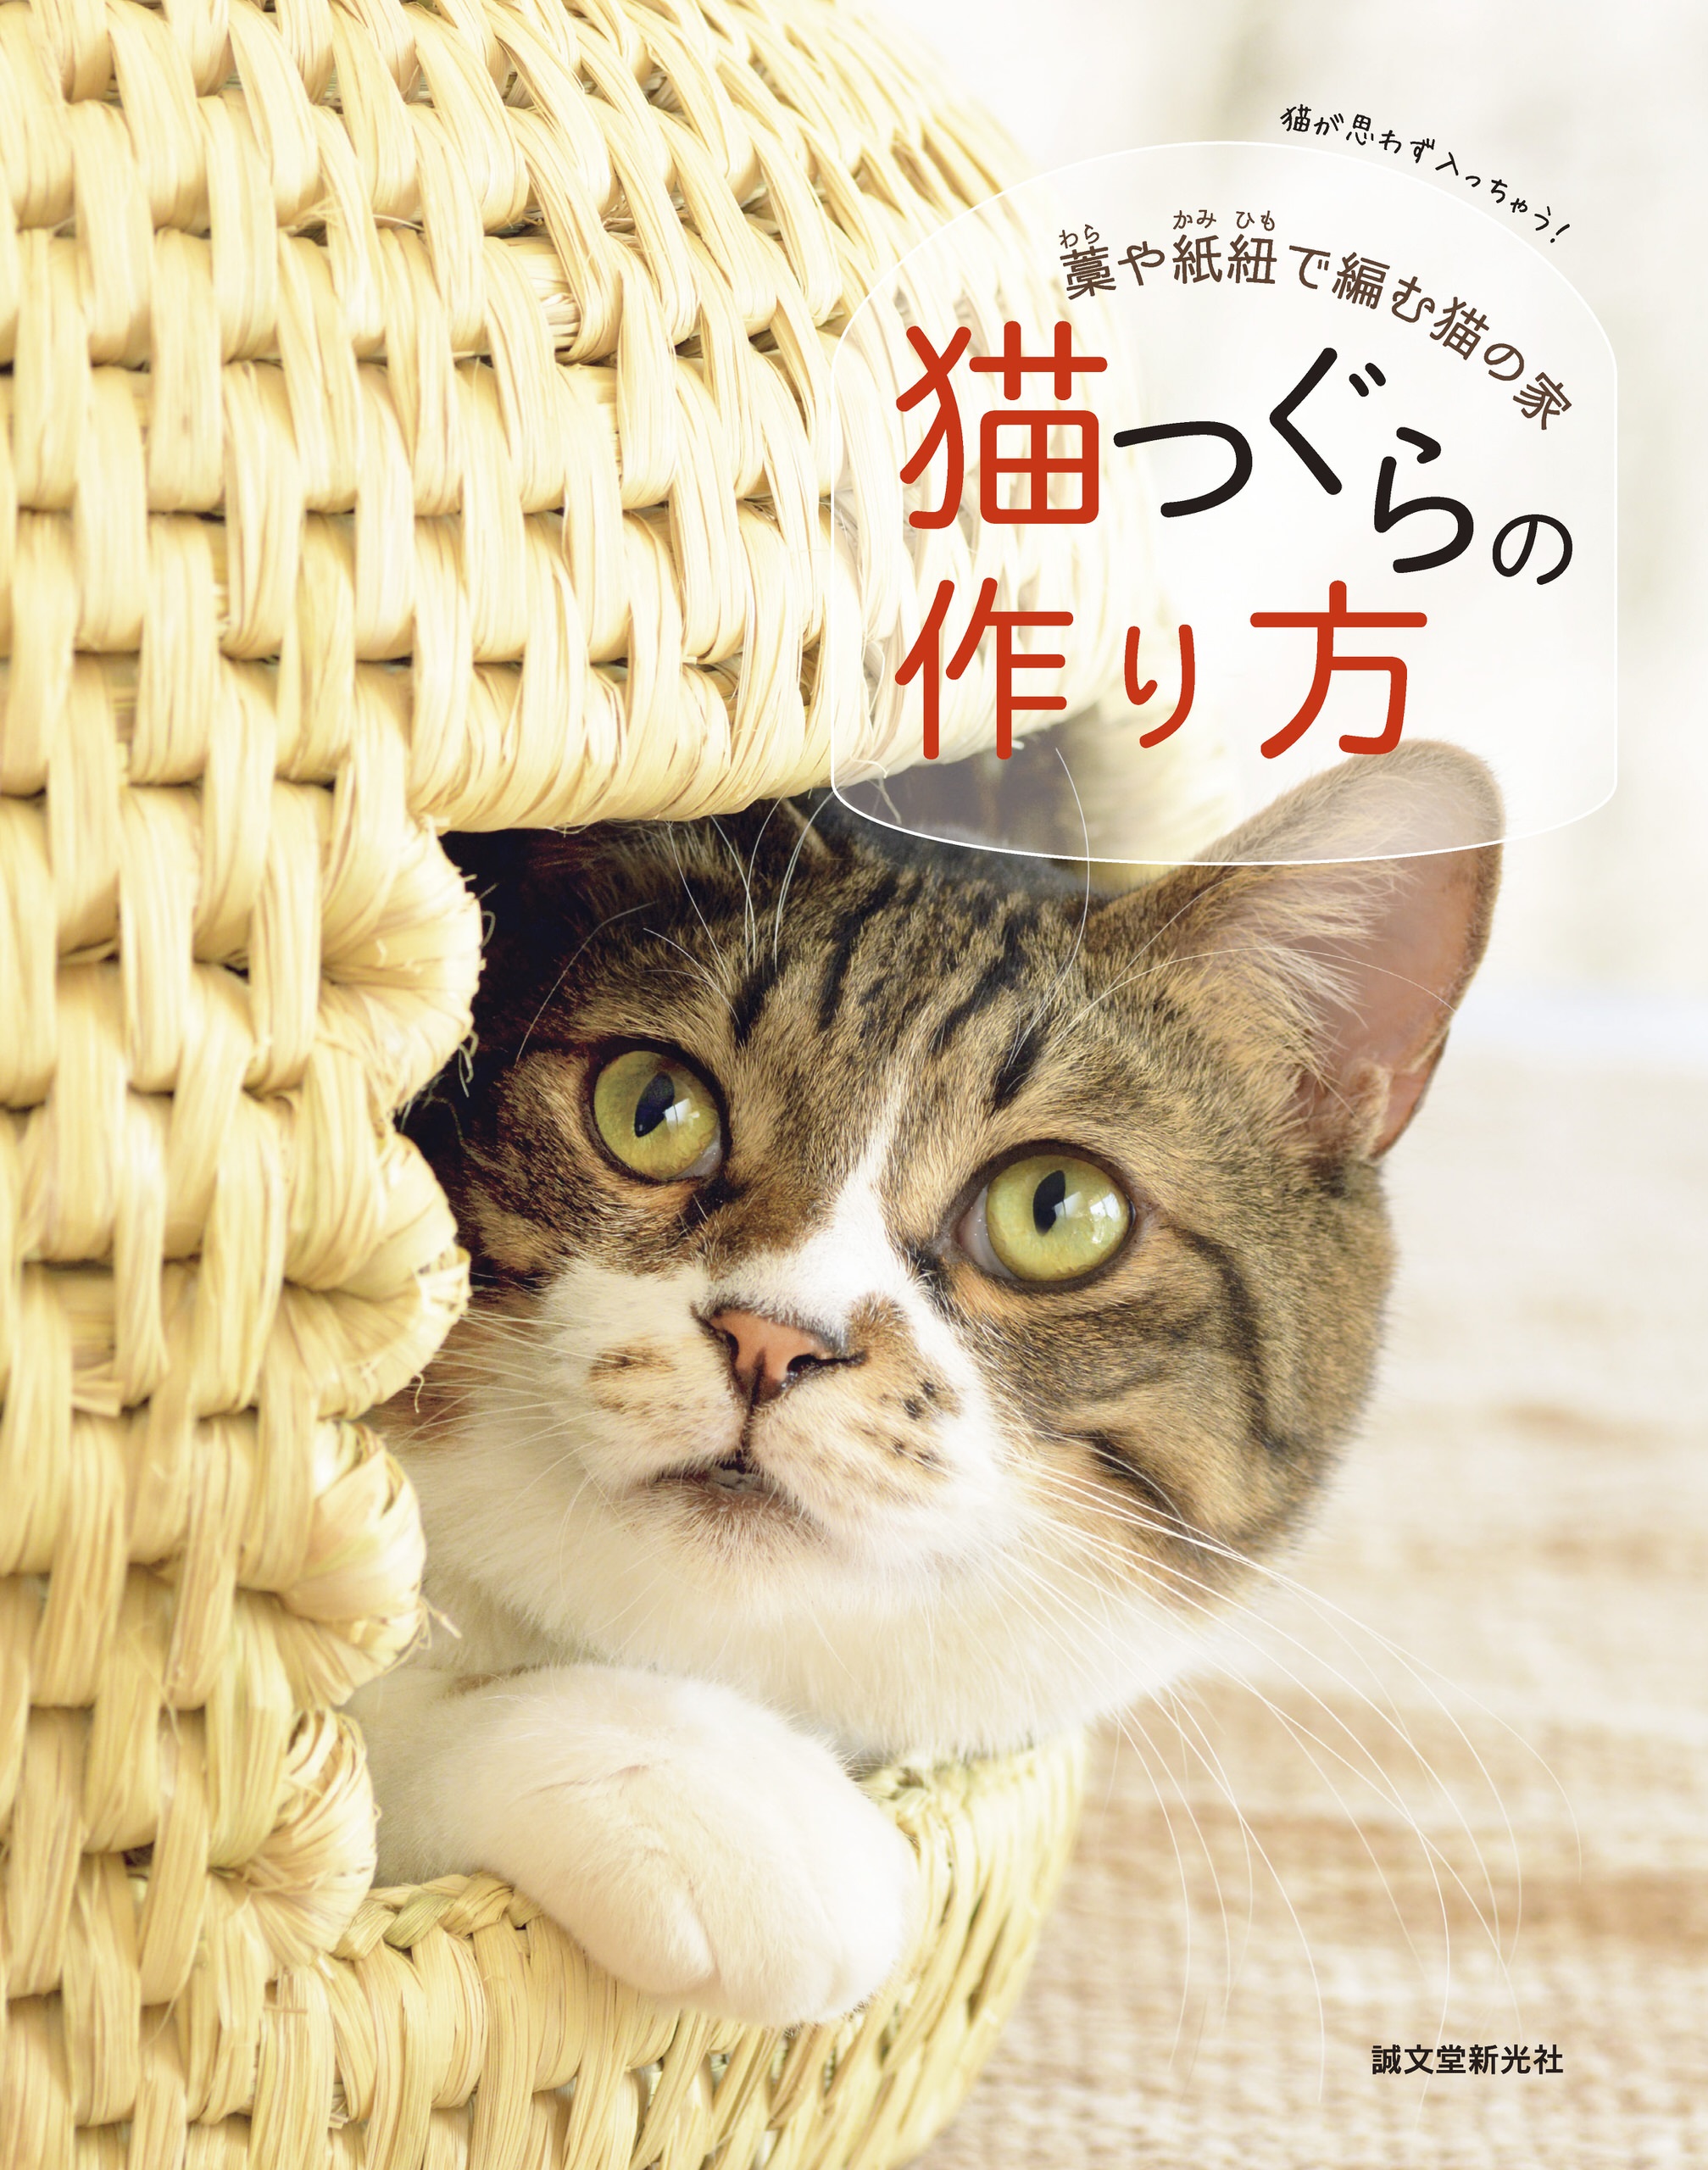 猫ちぐら(稲藁製品)、猫の家 作品no.67 - www.stedile.com.br